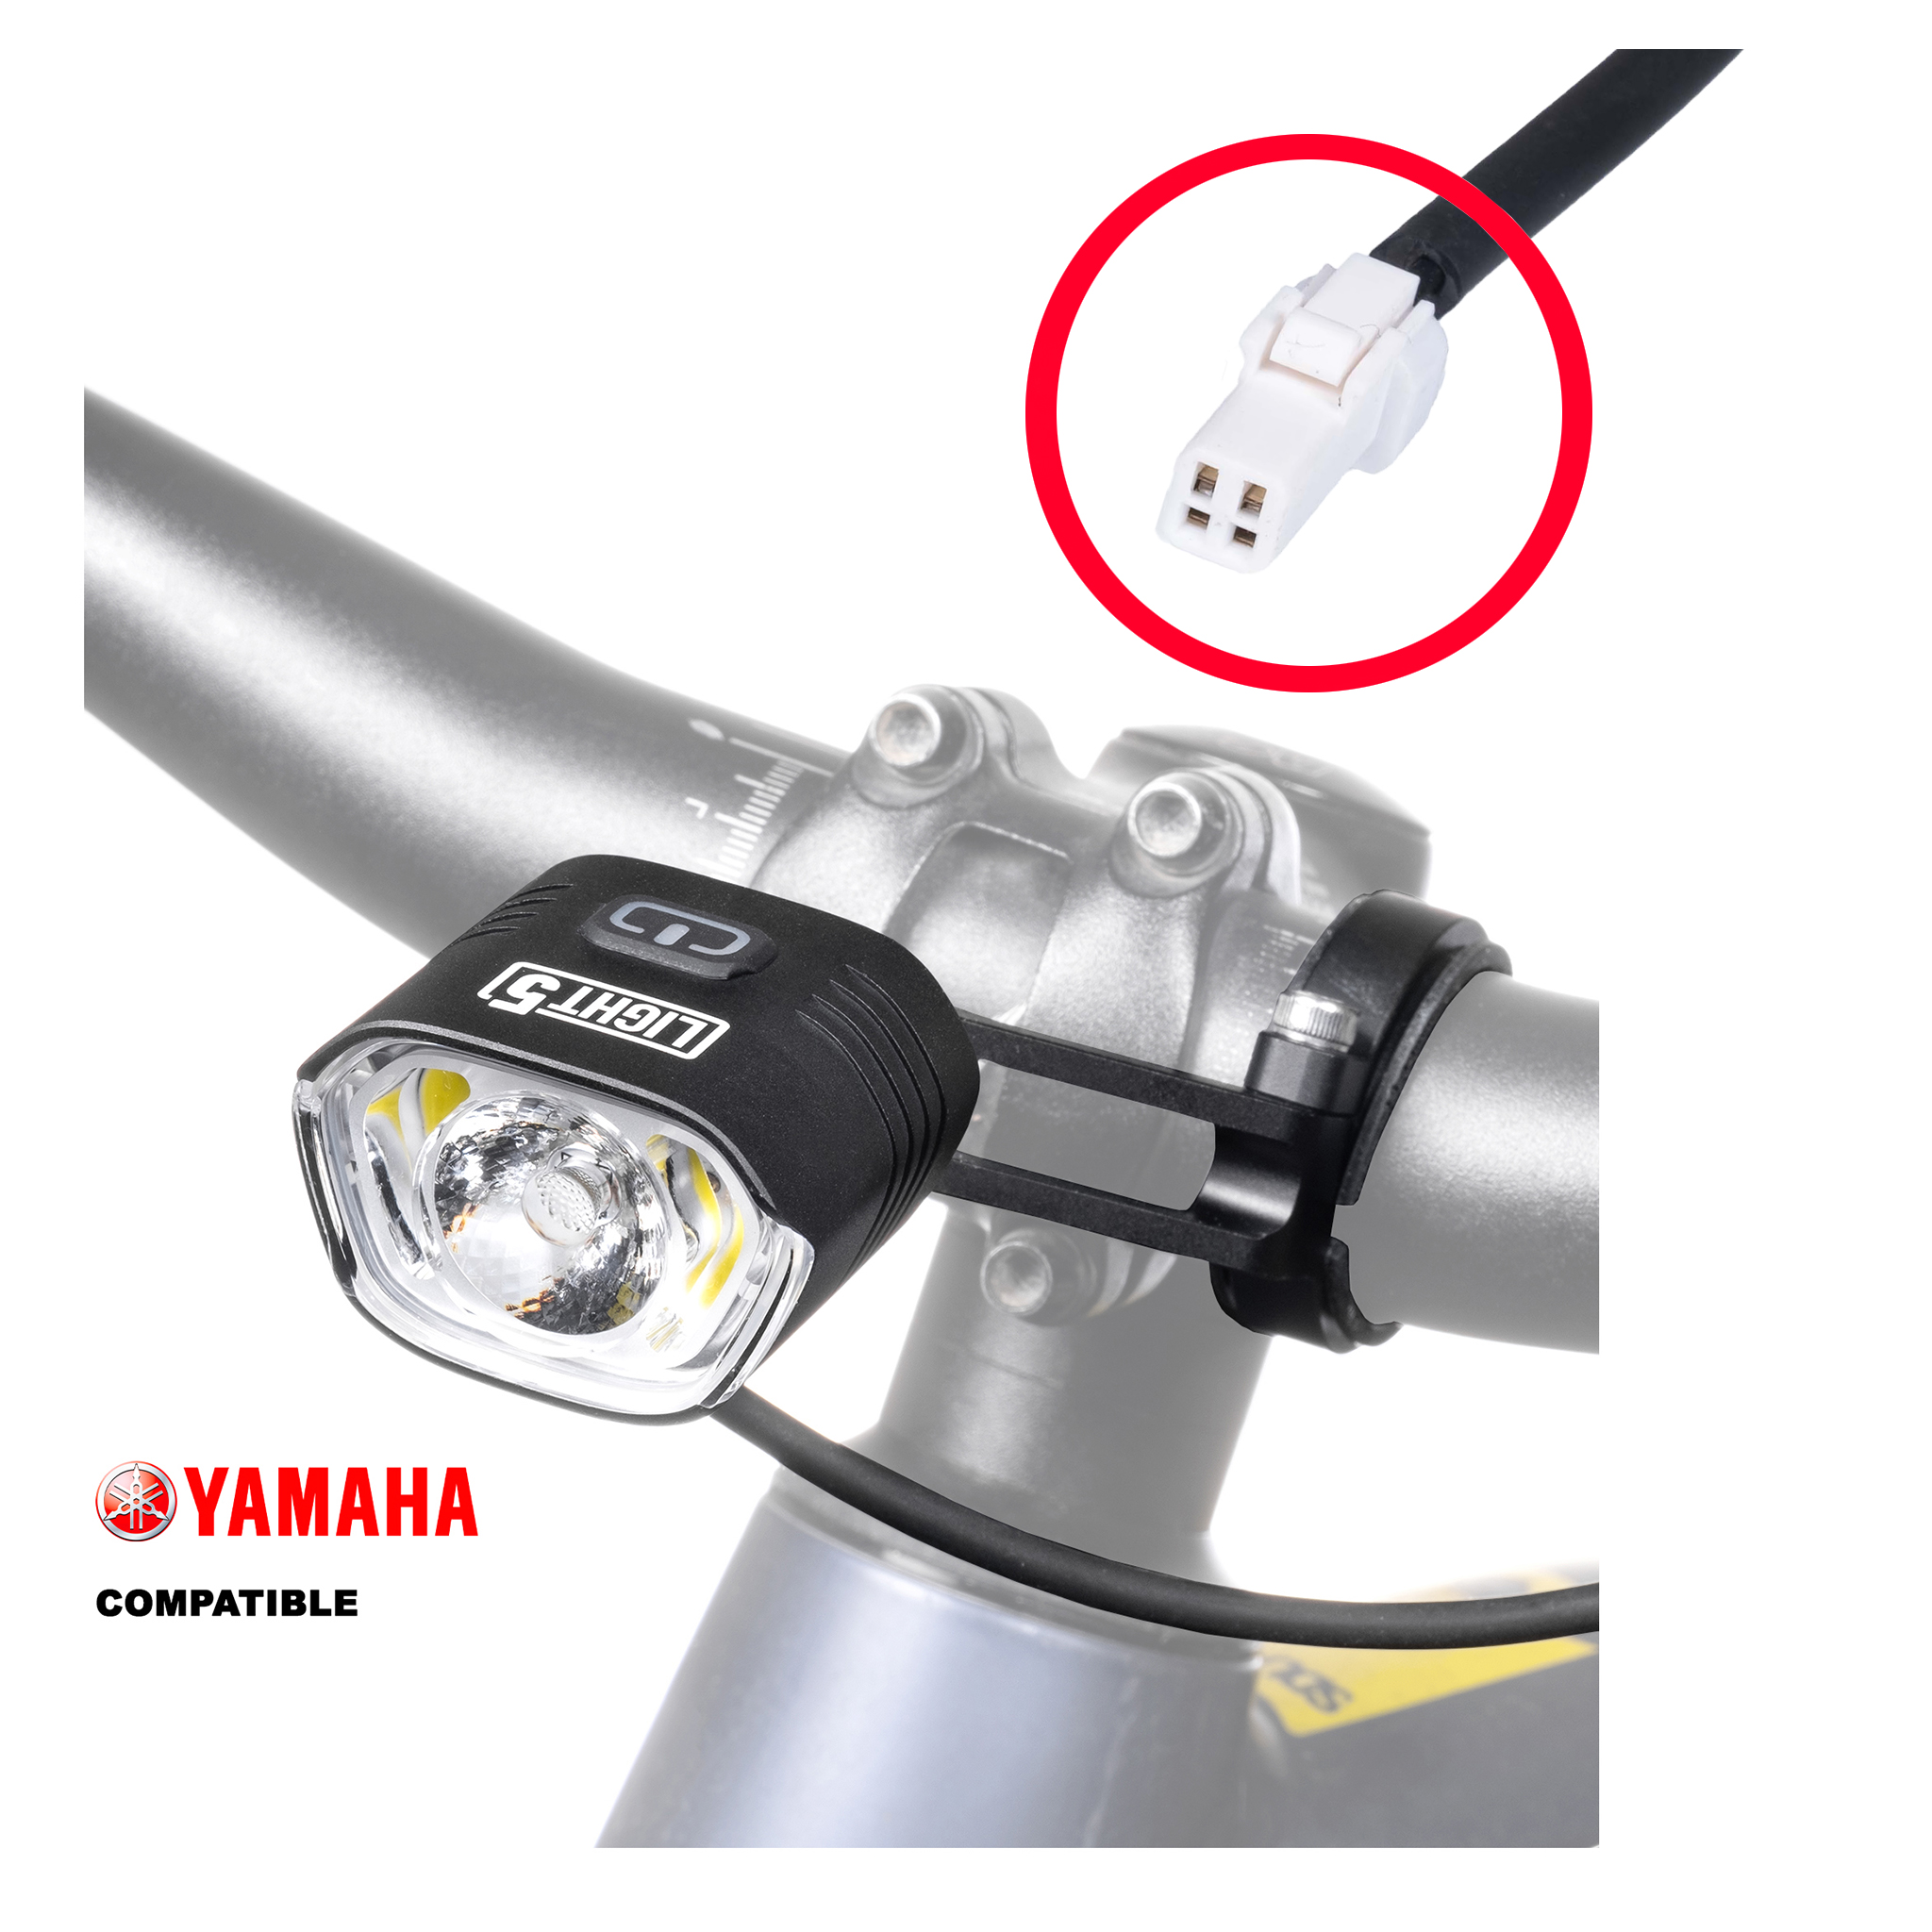 Cykellampa för elcykel Light5 EB1000 Yamaha, 1000 lm, Yamaha